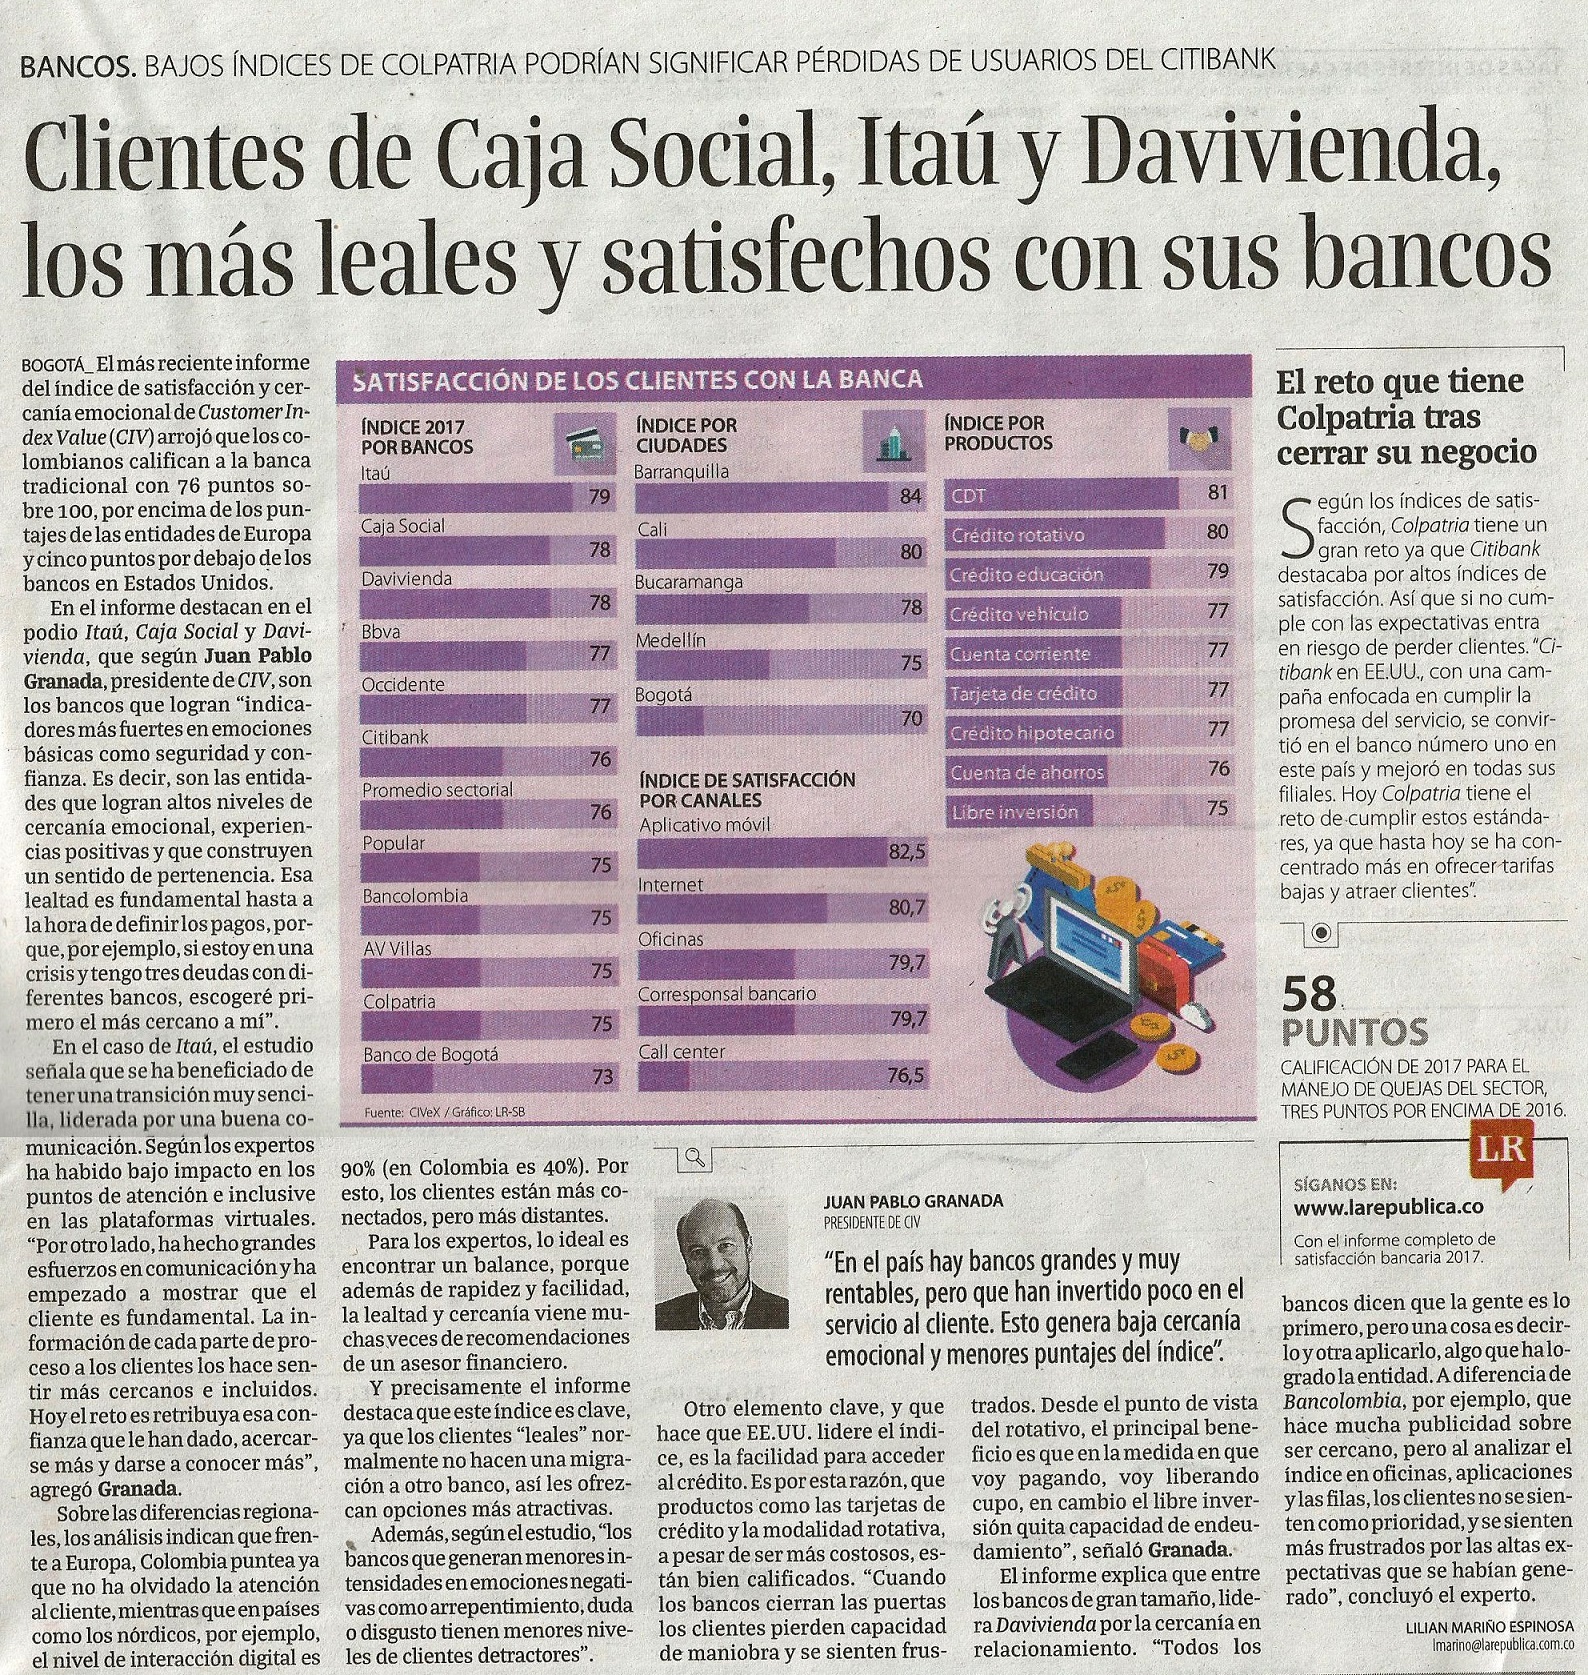 Clientes de Caja Social, Itaú y Davivienda, los más leales y satisfechos con sus bancos